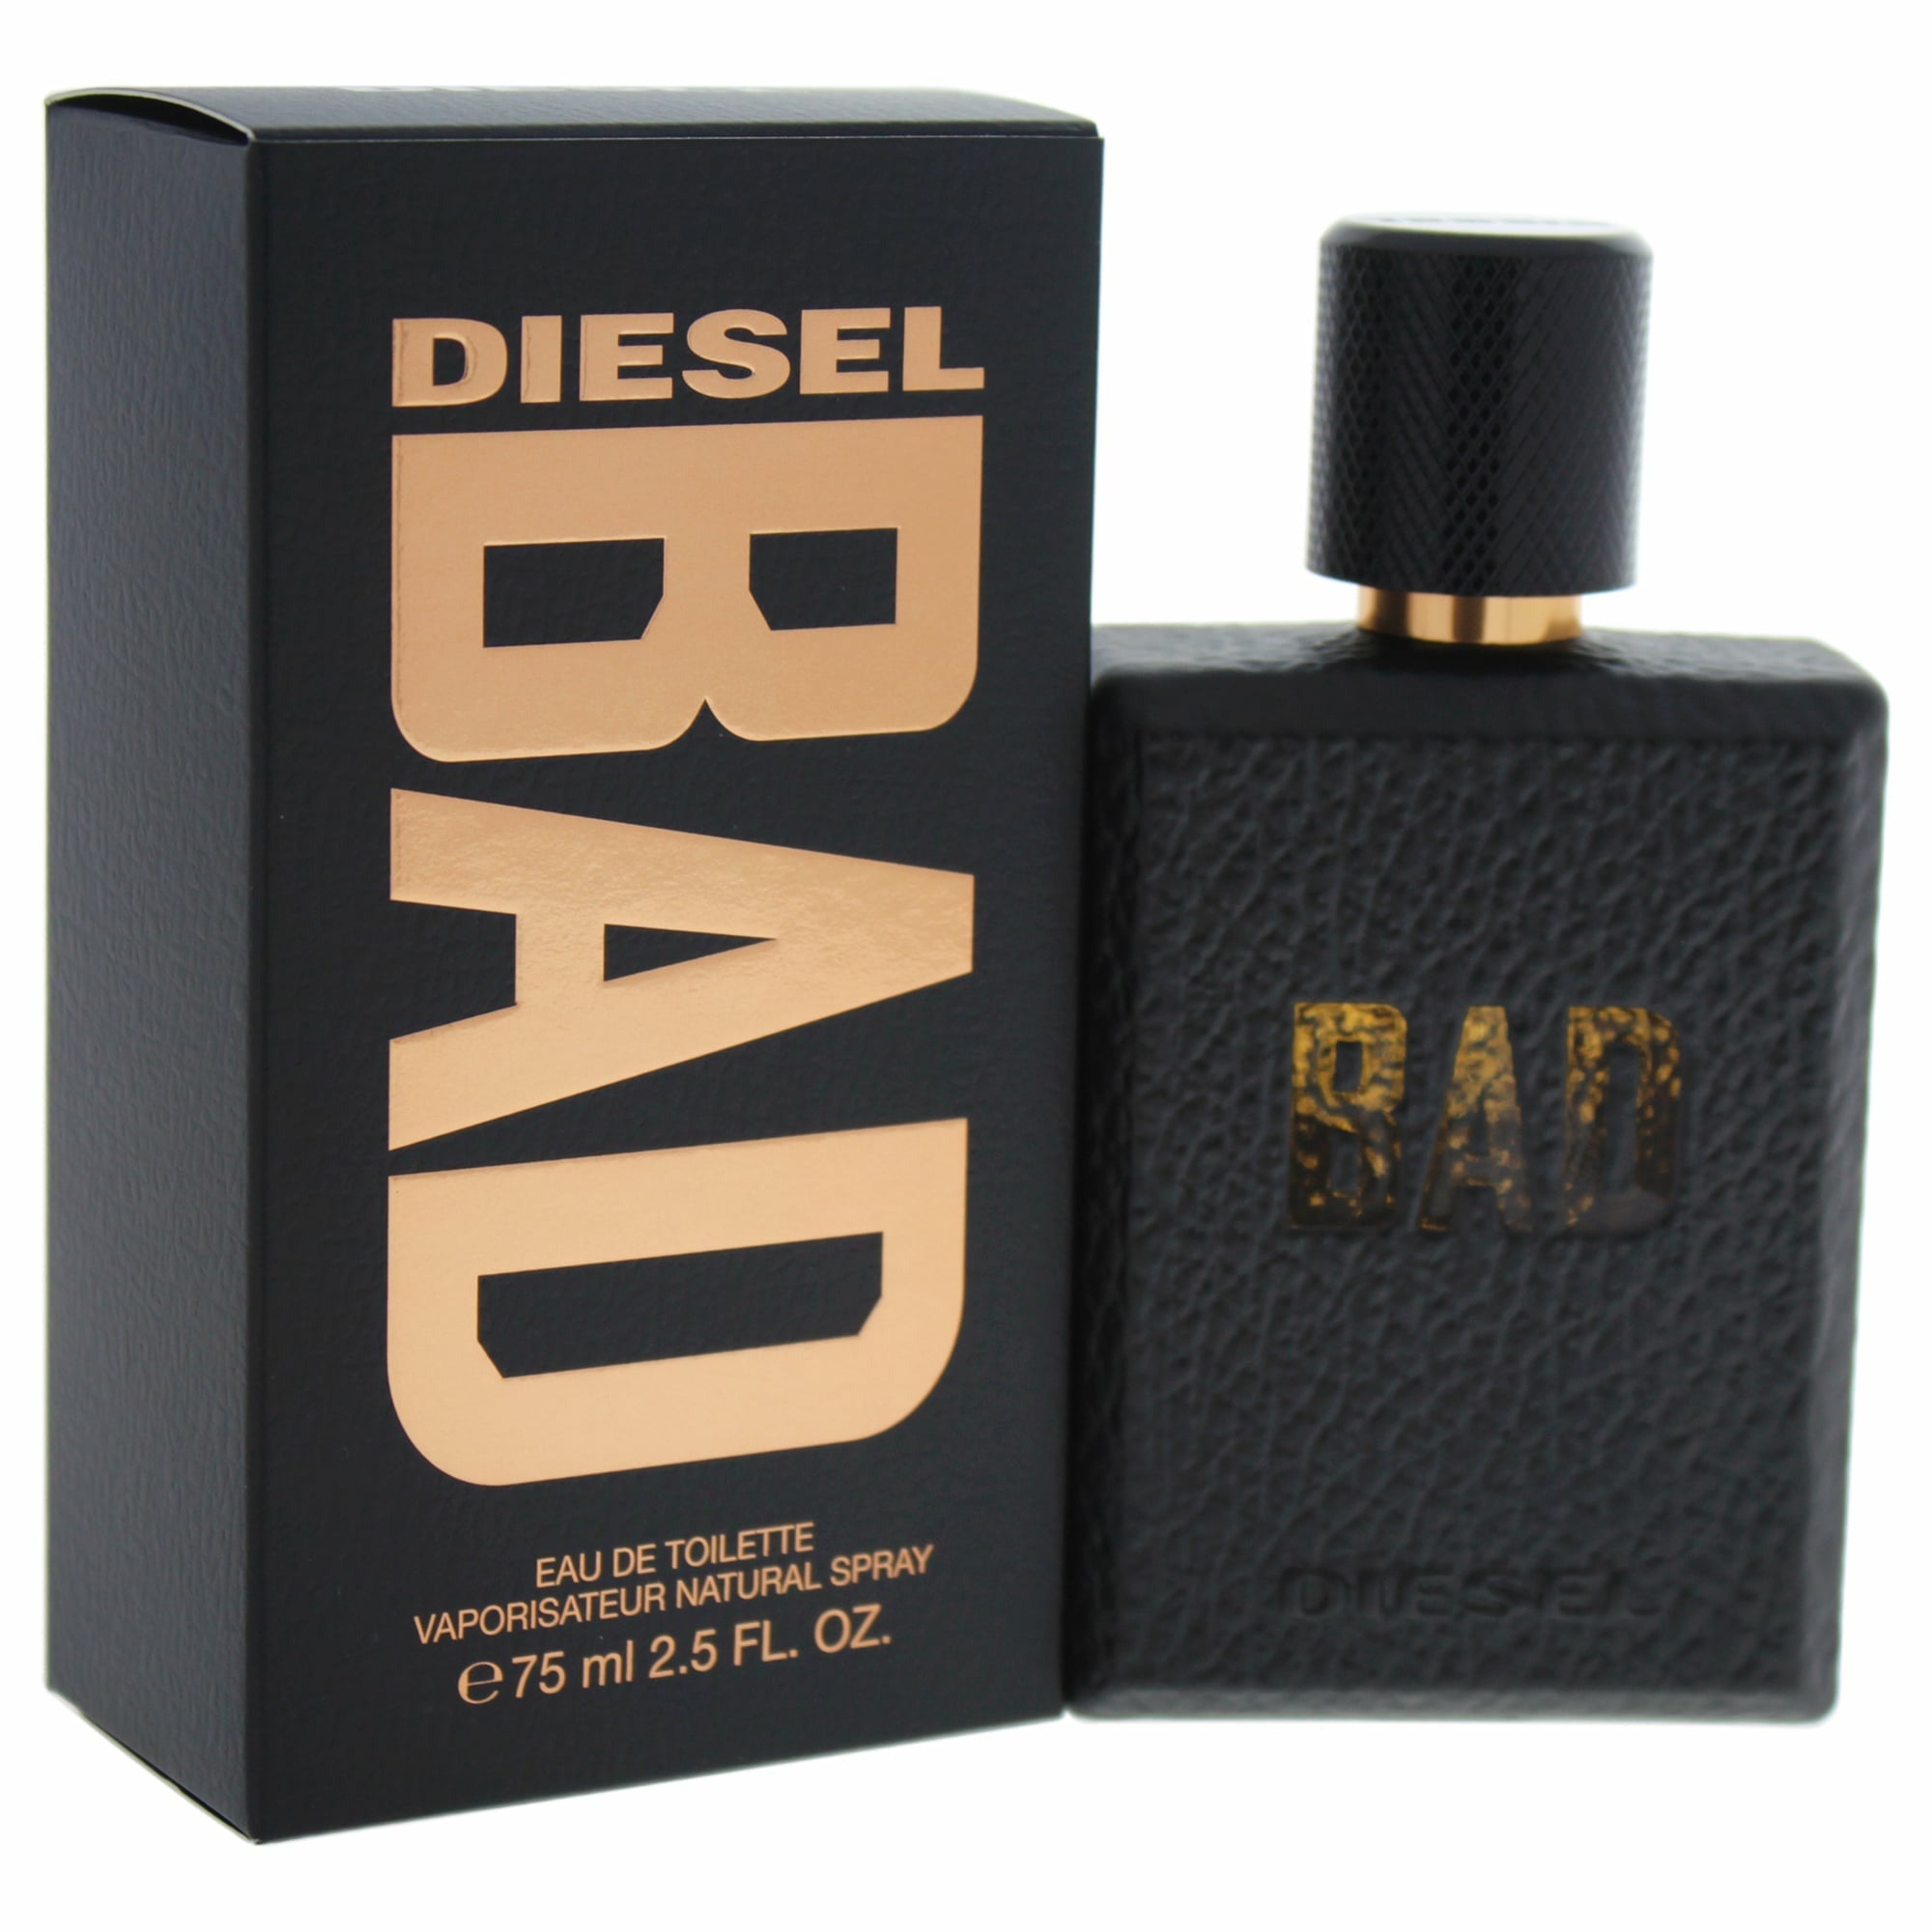    diesel-bad-hombre-perfume